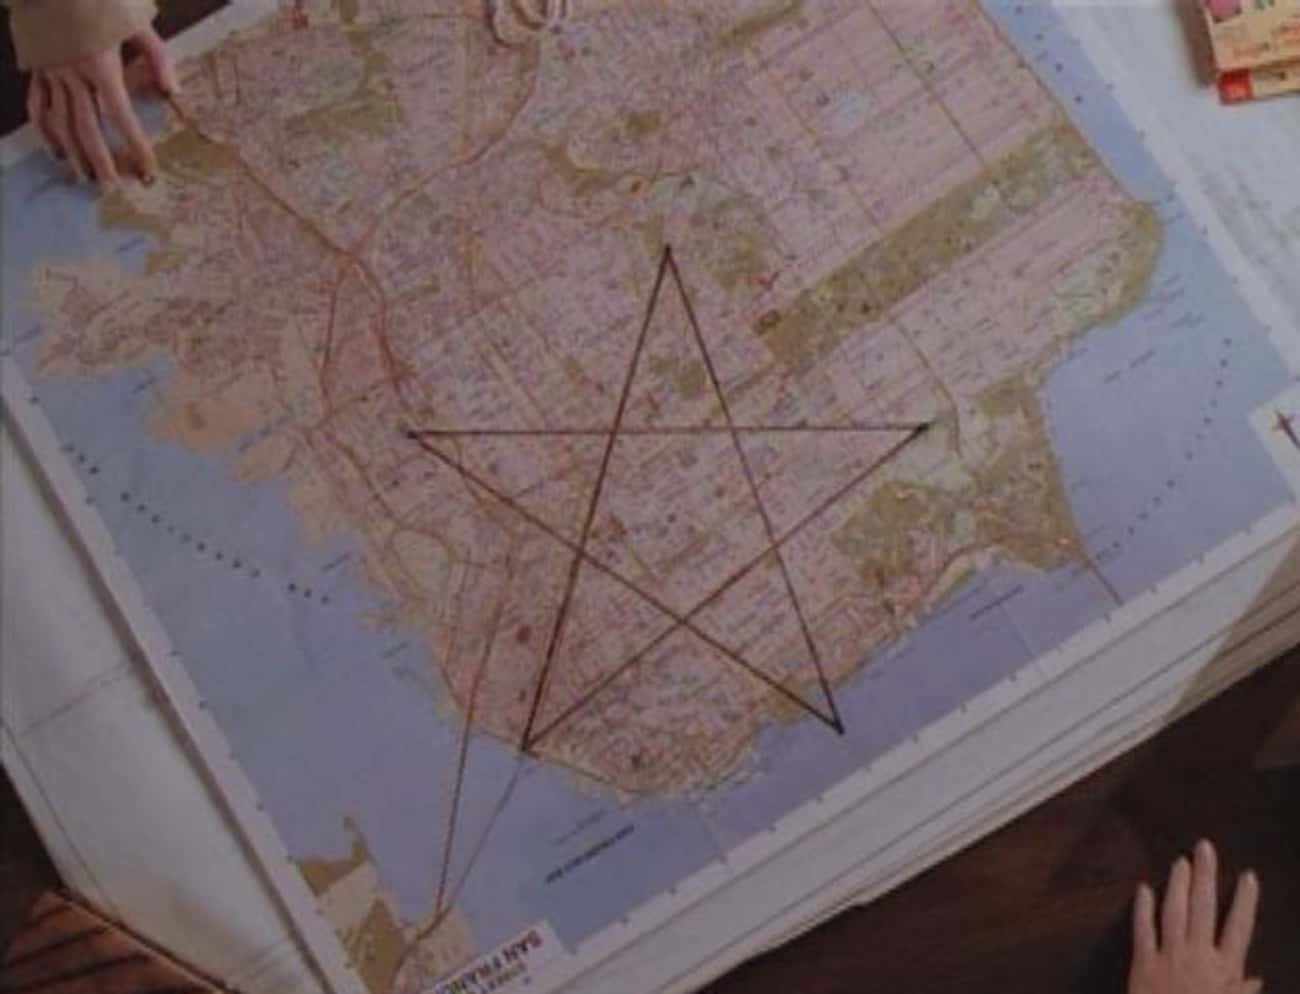 The Goddamn Pentagram on the Map